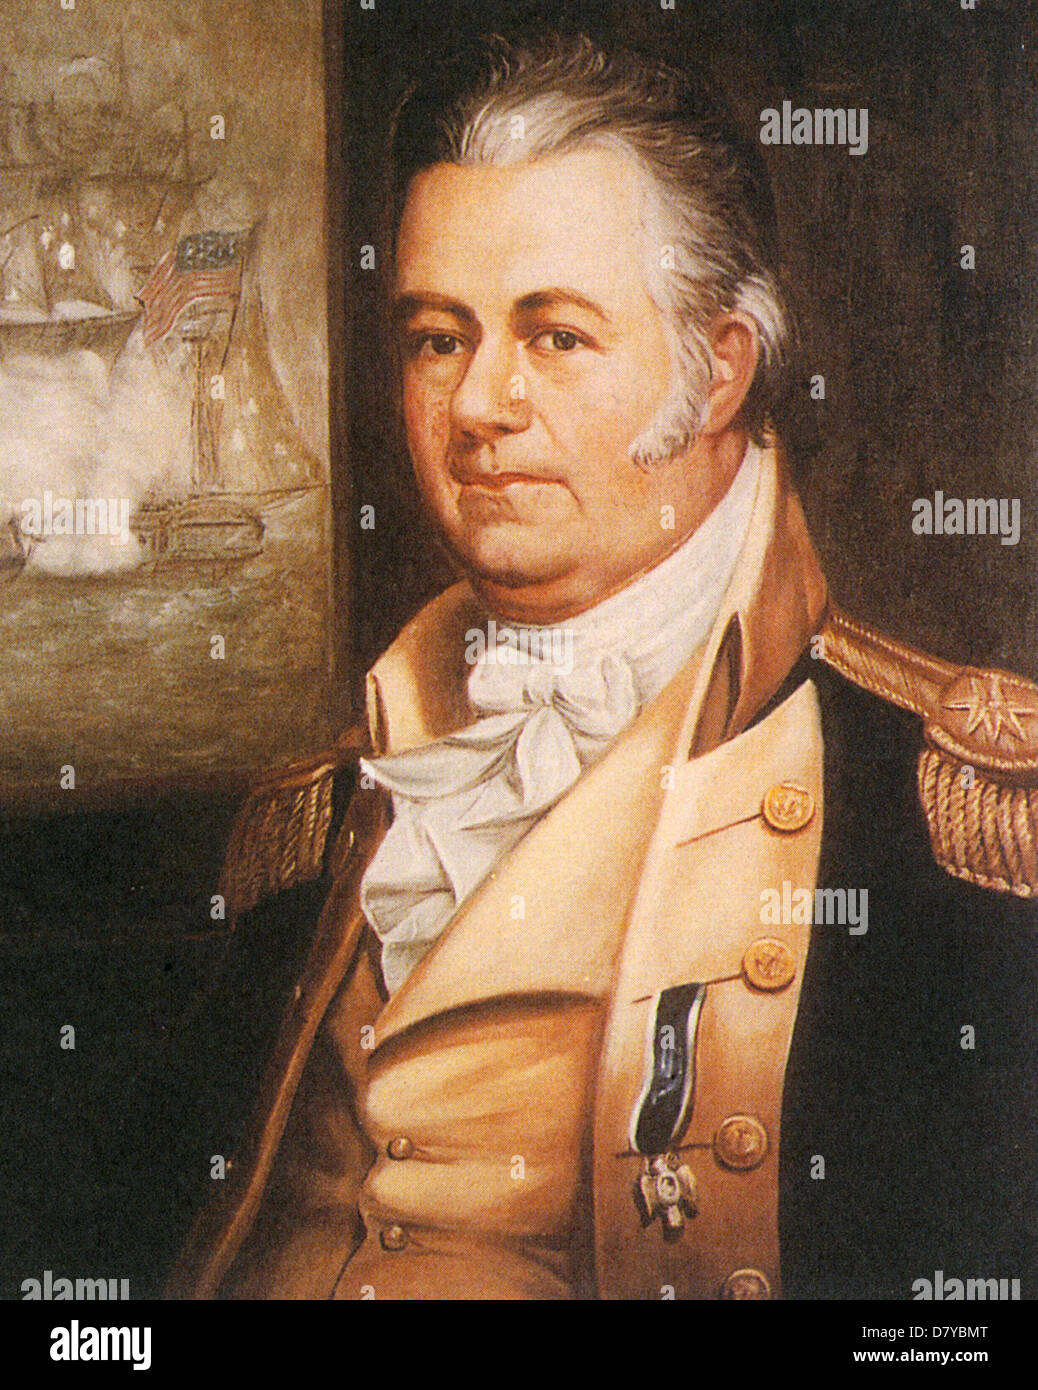 THOMAS TRUXTON (1755-1822) officier de la marine américaine peint par base Otis en 1817 Banque D'Images